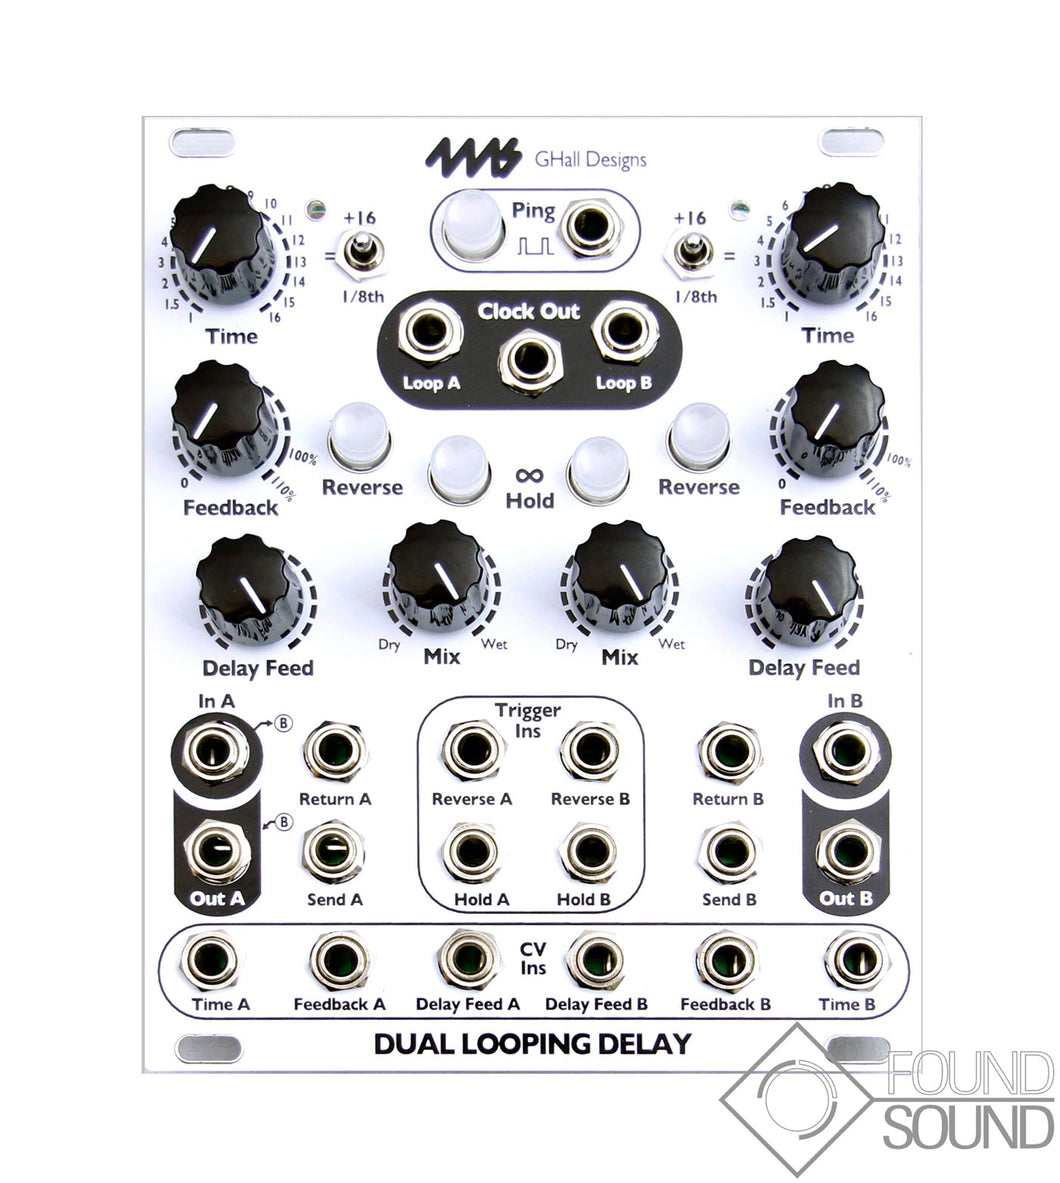 4MS Dual Looping Delay